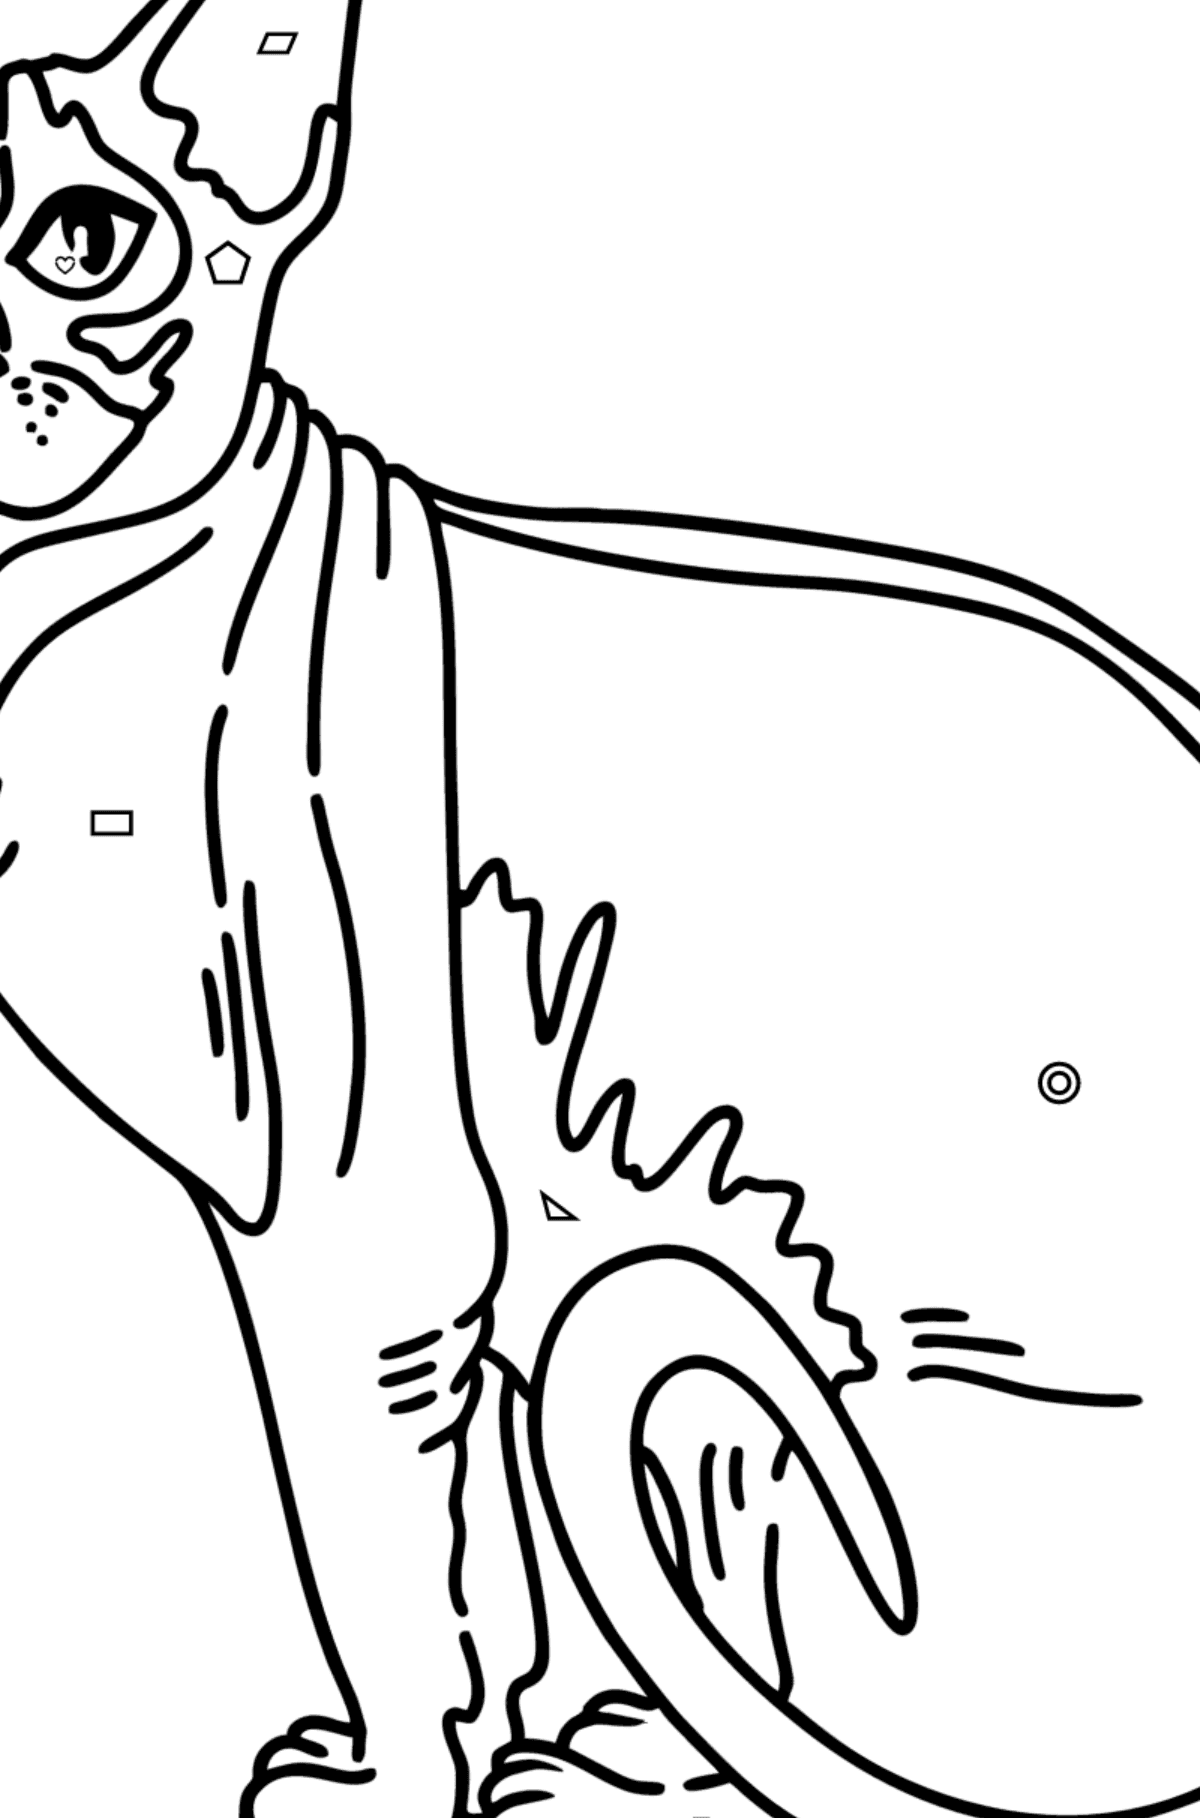 Раскраска кошка Сфинкс - Картинка высокого качества для Детей